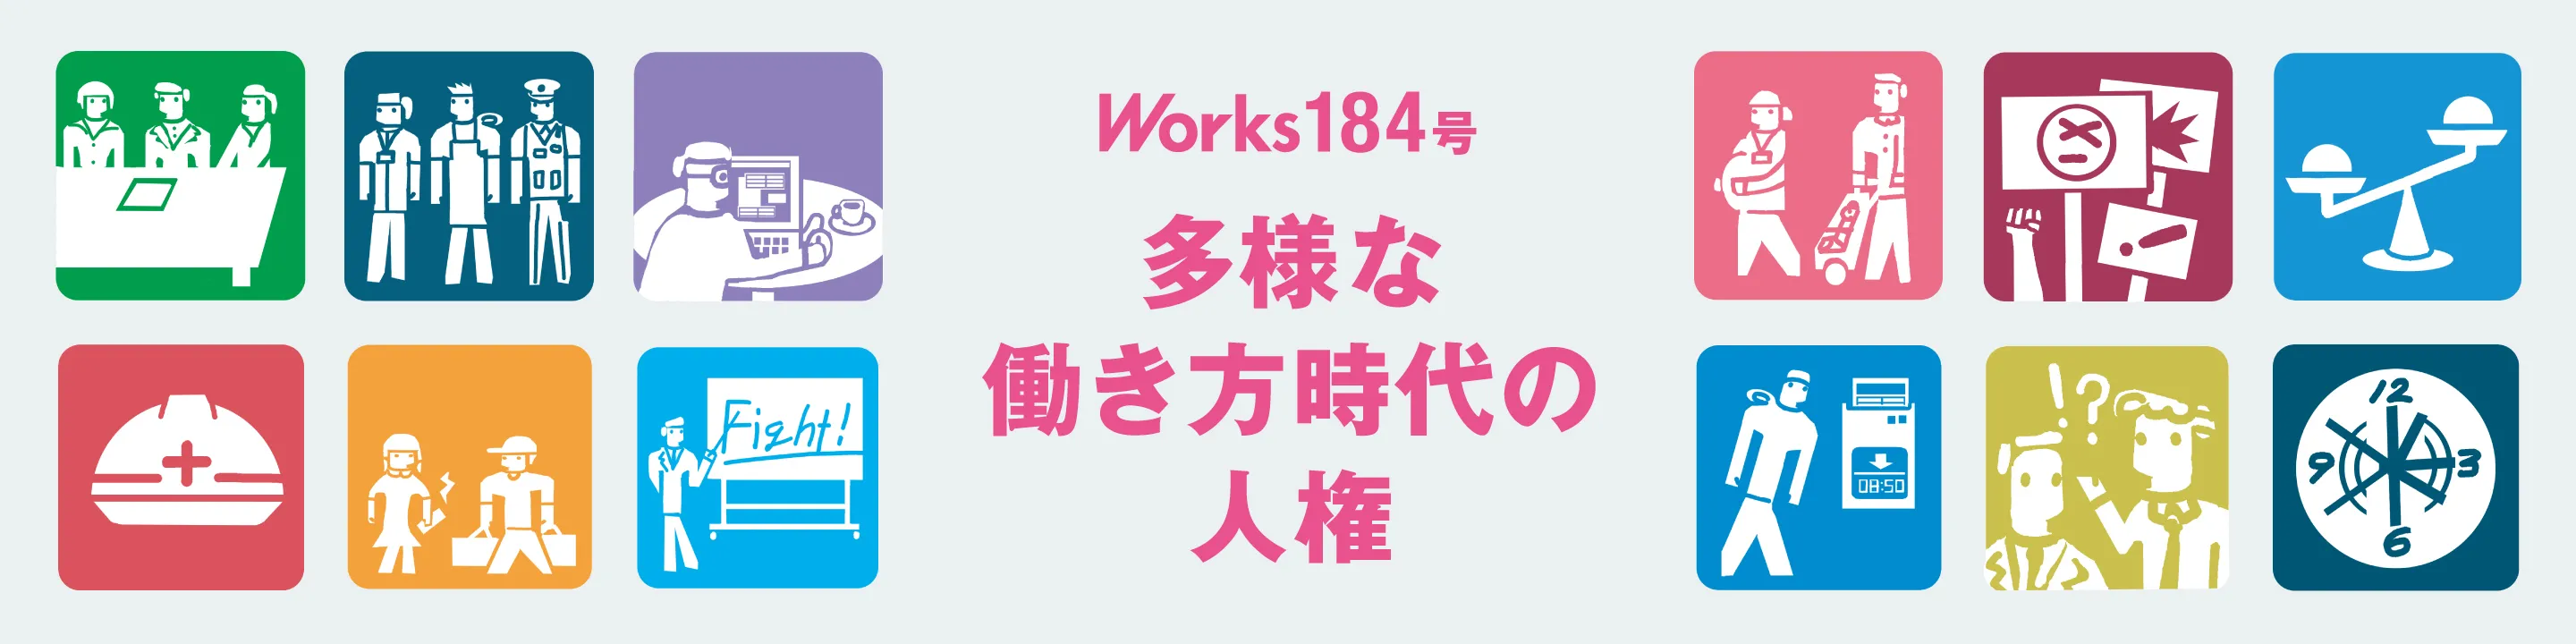 Works184号オンラインセミナー